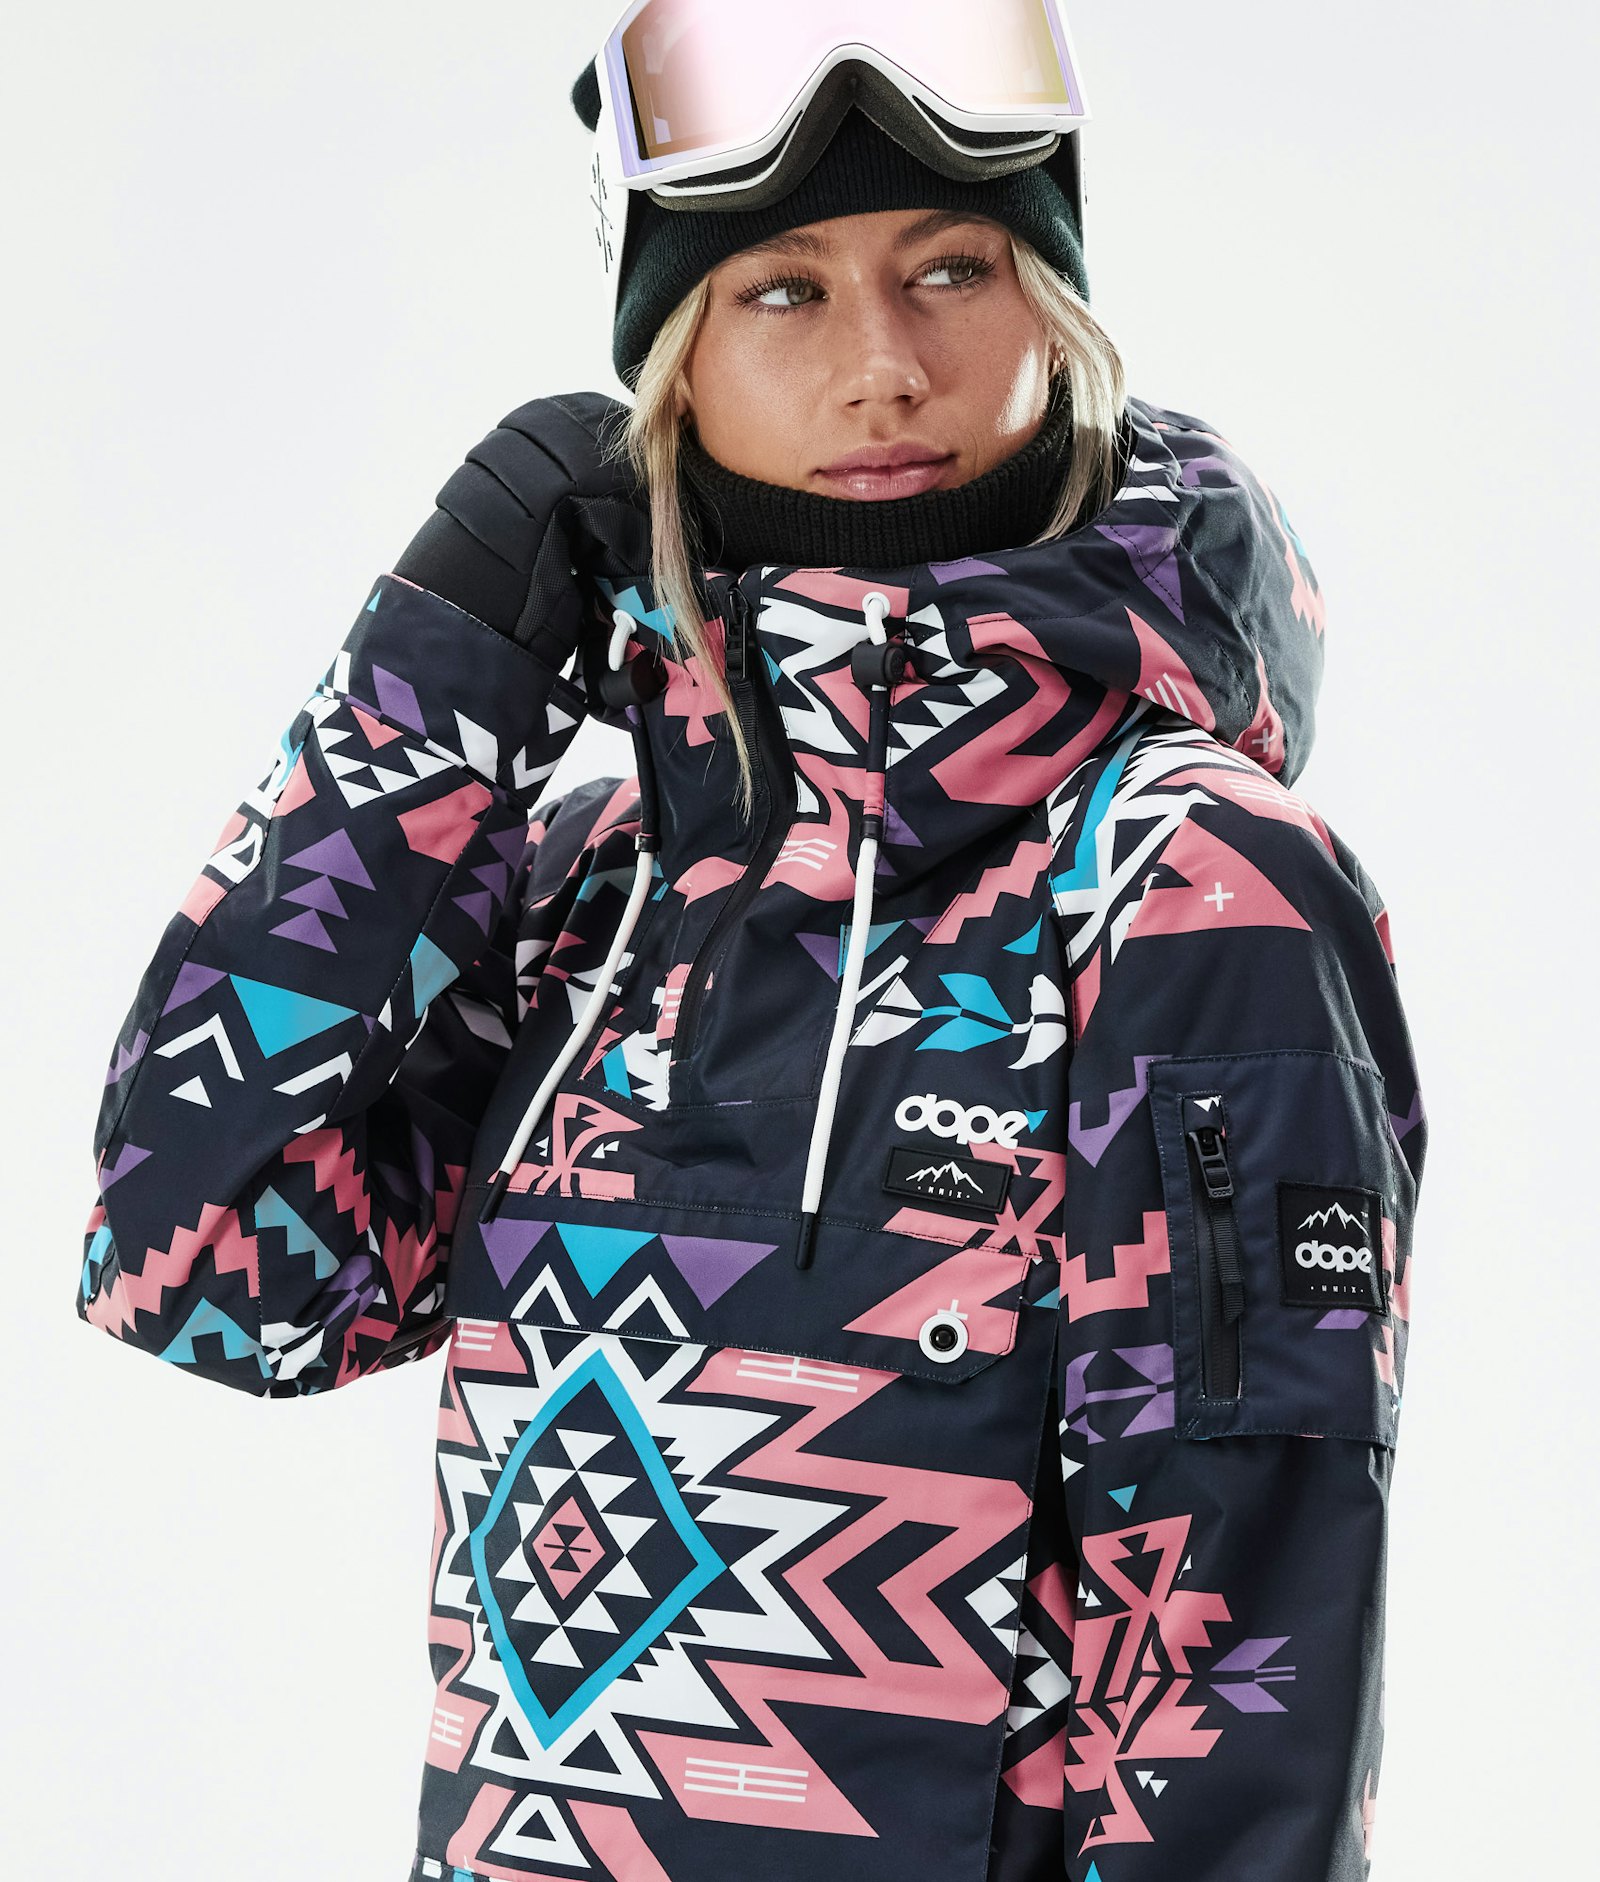 Annok W 2020 Snowboard jas Dames Inka Pink